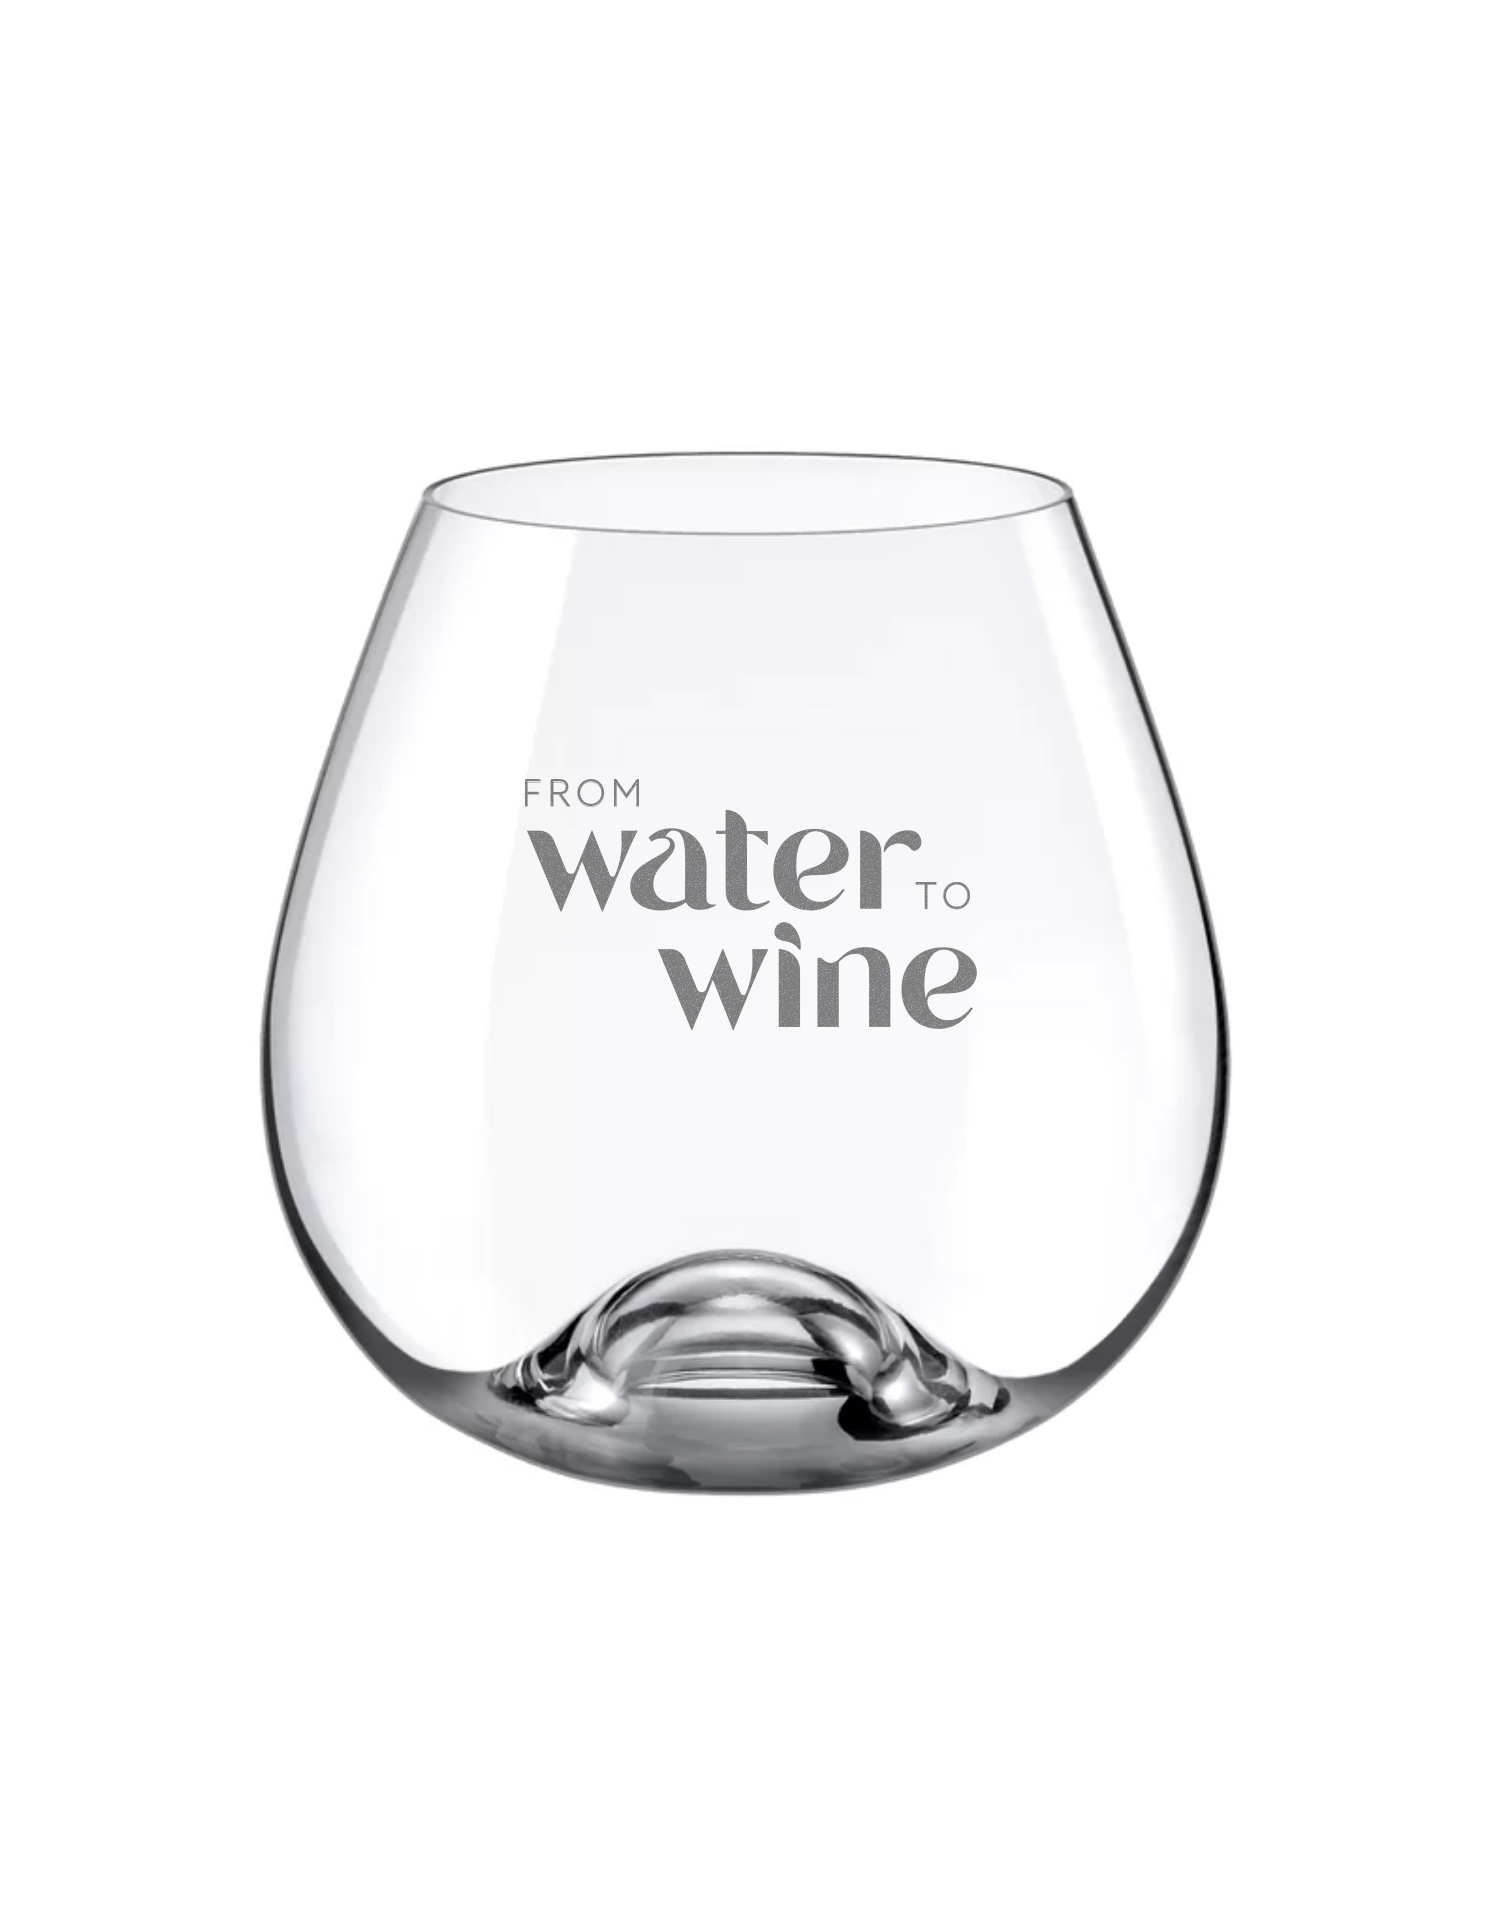 FWTW-wineglass